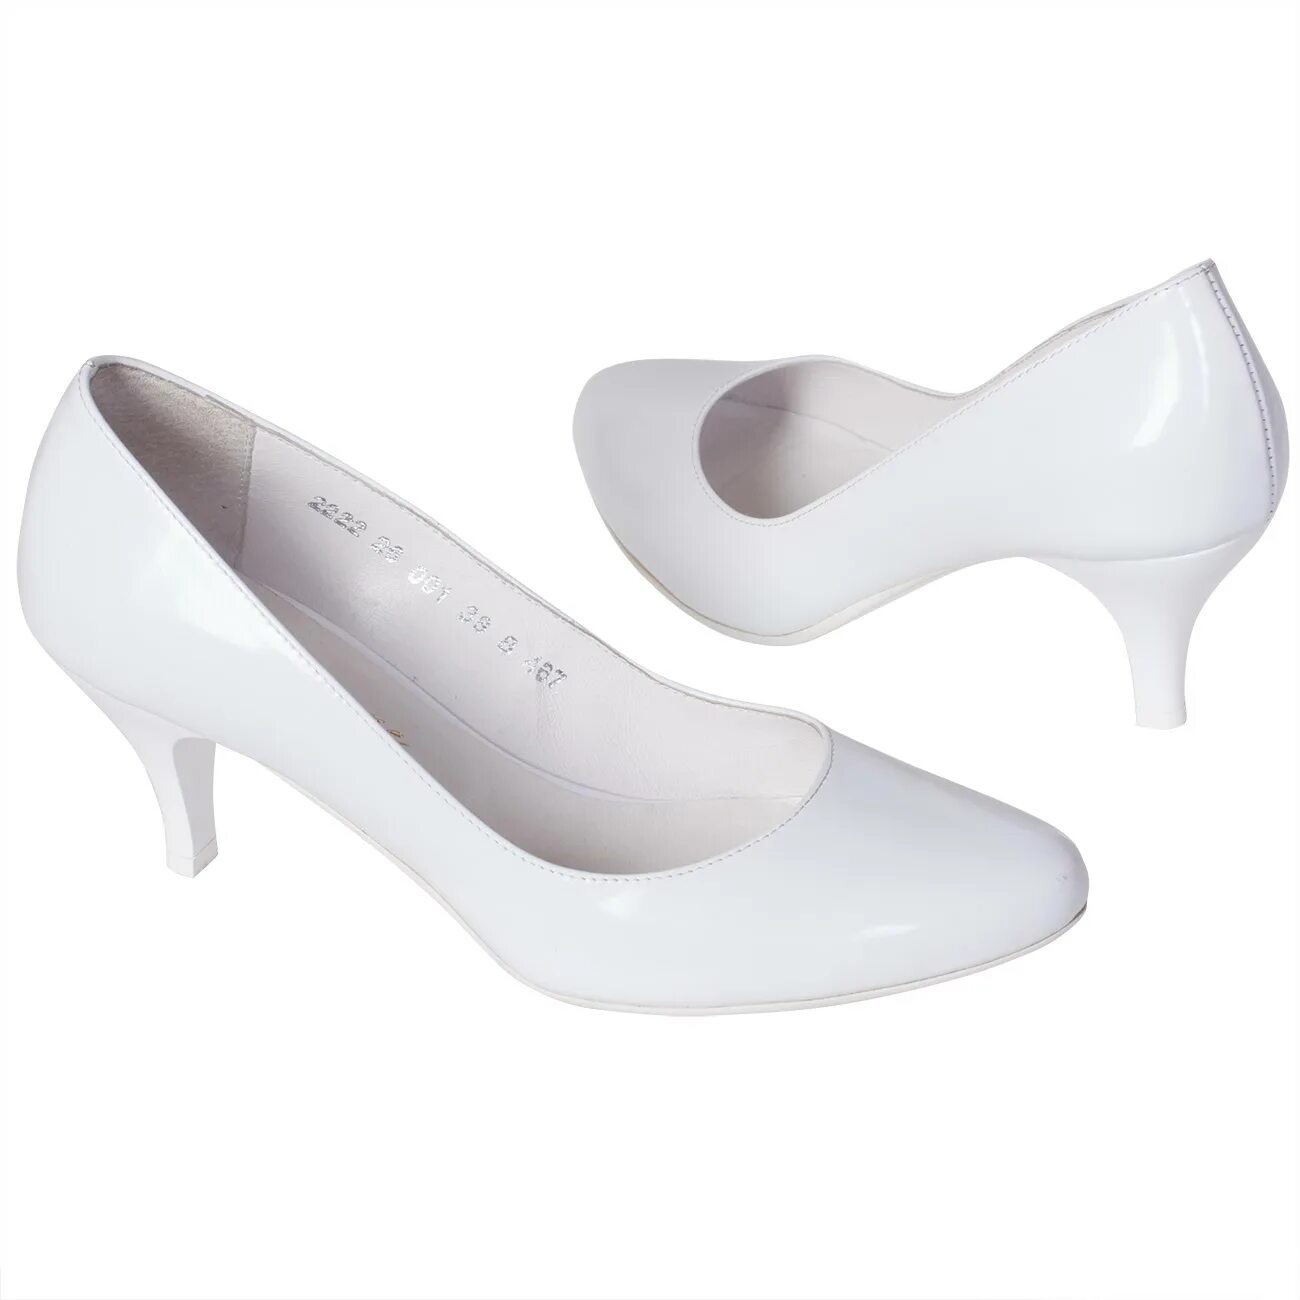 Лодочки Эконика белые. Туфли женские Aubergine crakle арт. 72857/407. Эконика туфли на маленьком каблуке. Белые туфли на валберис.